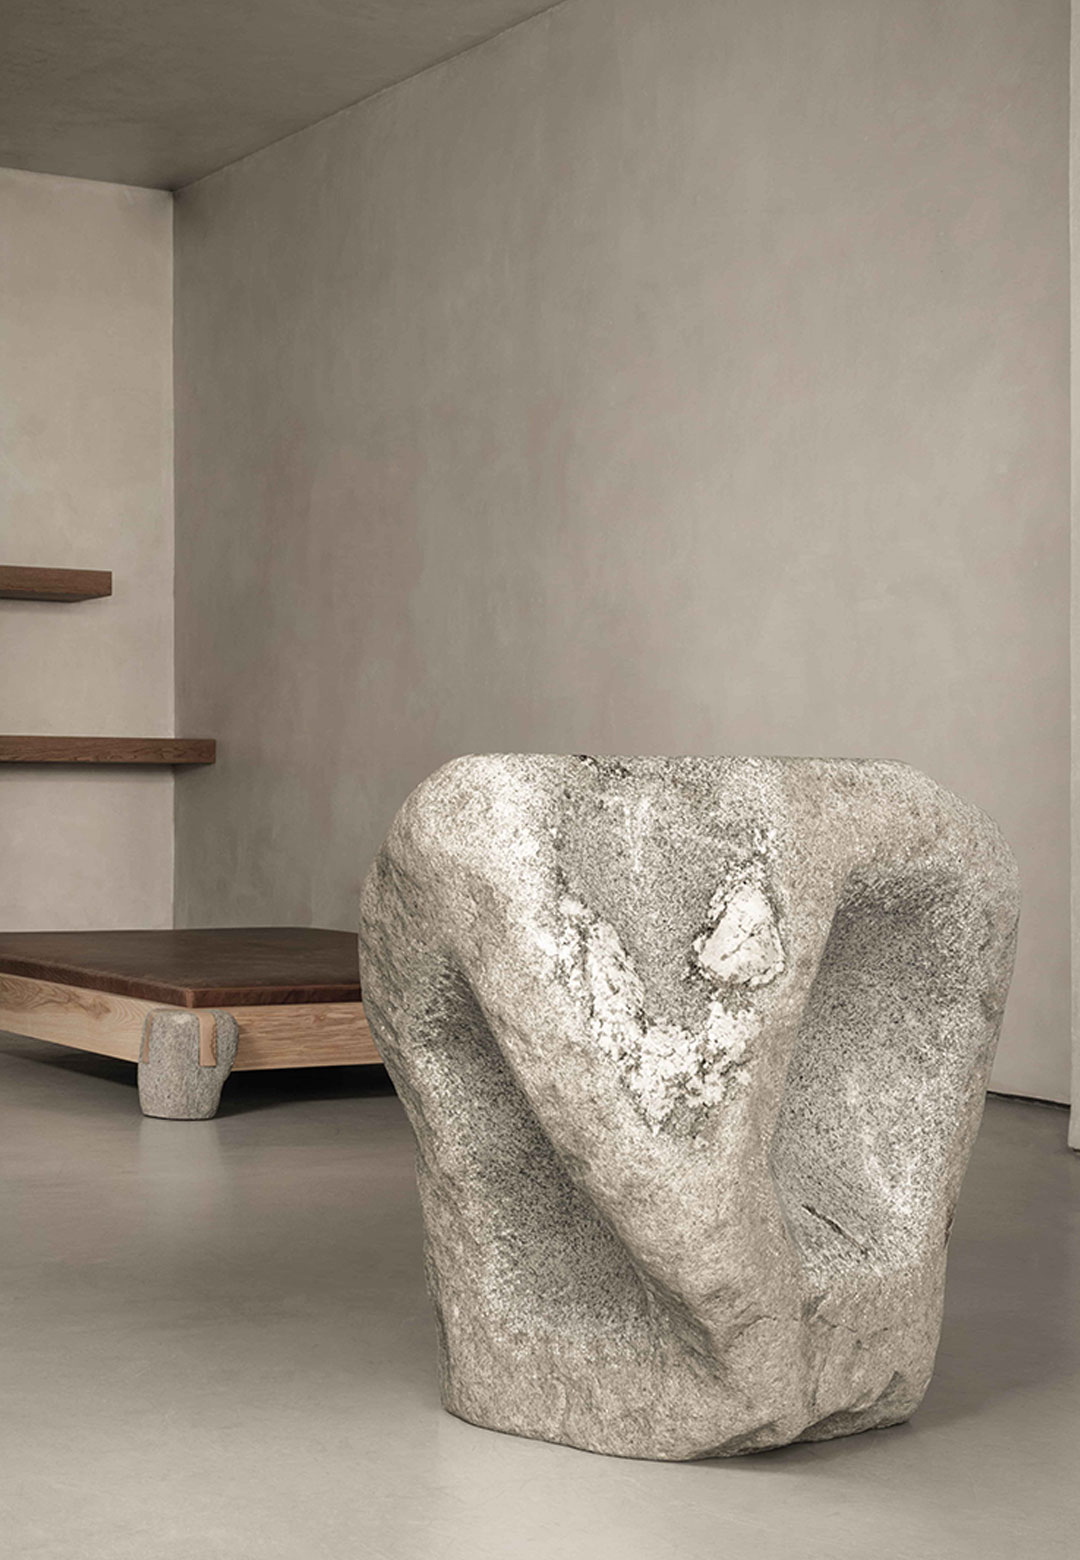 The Wabi-Sabi philosophy sculpts Ethan Stebbins’ exhibition at Les Ateliers Courbet